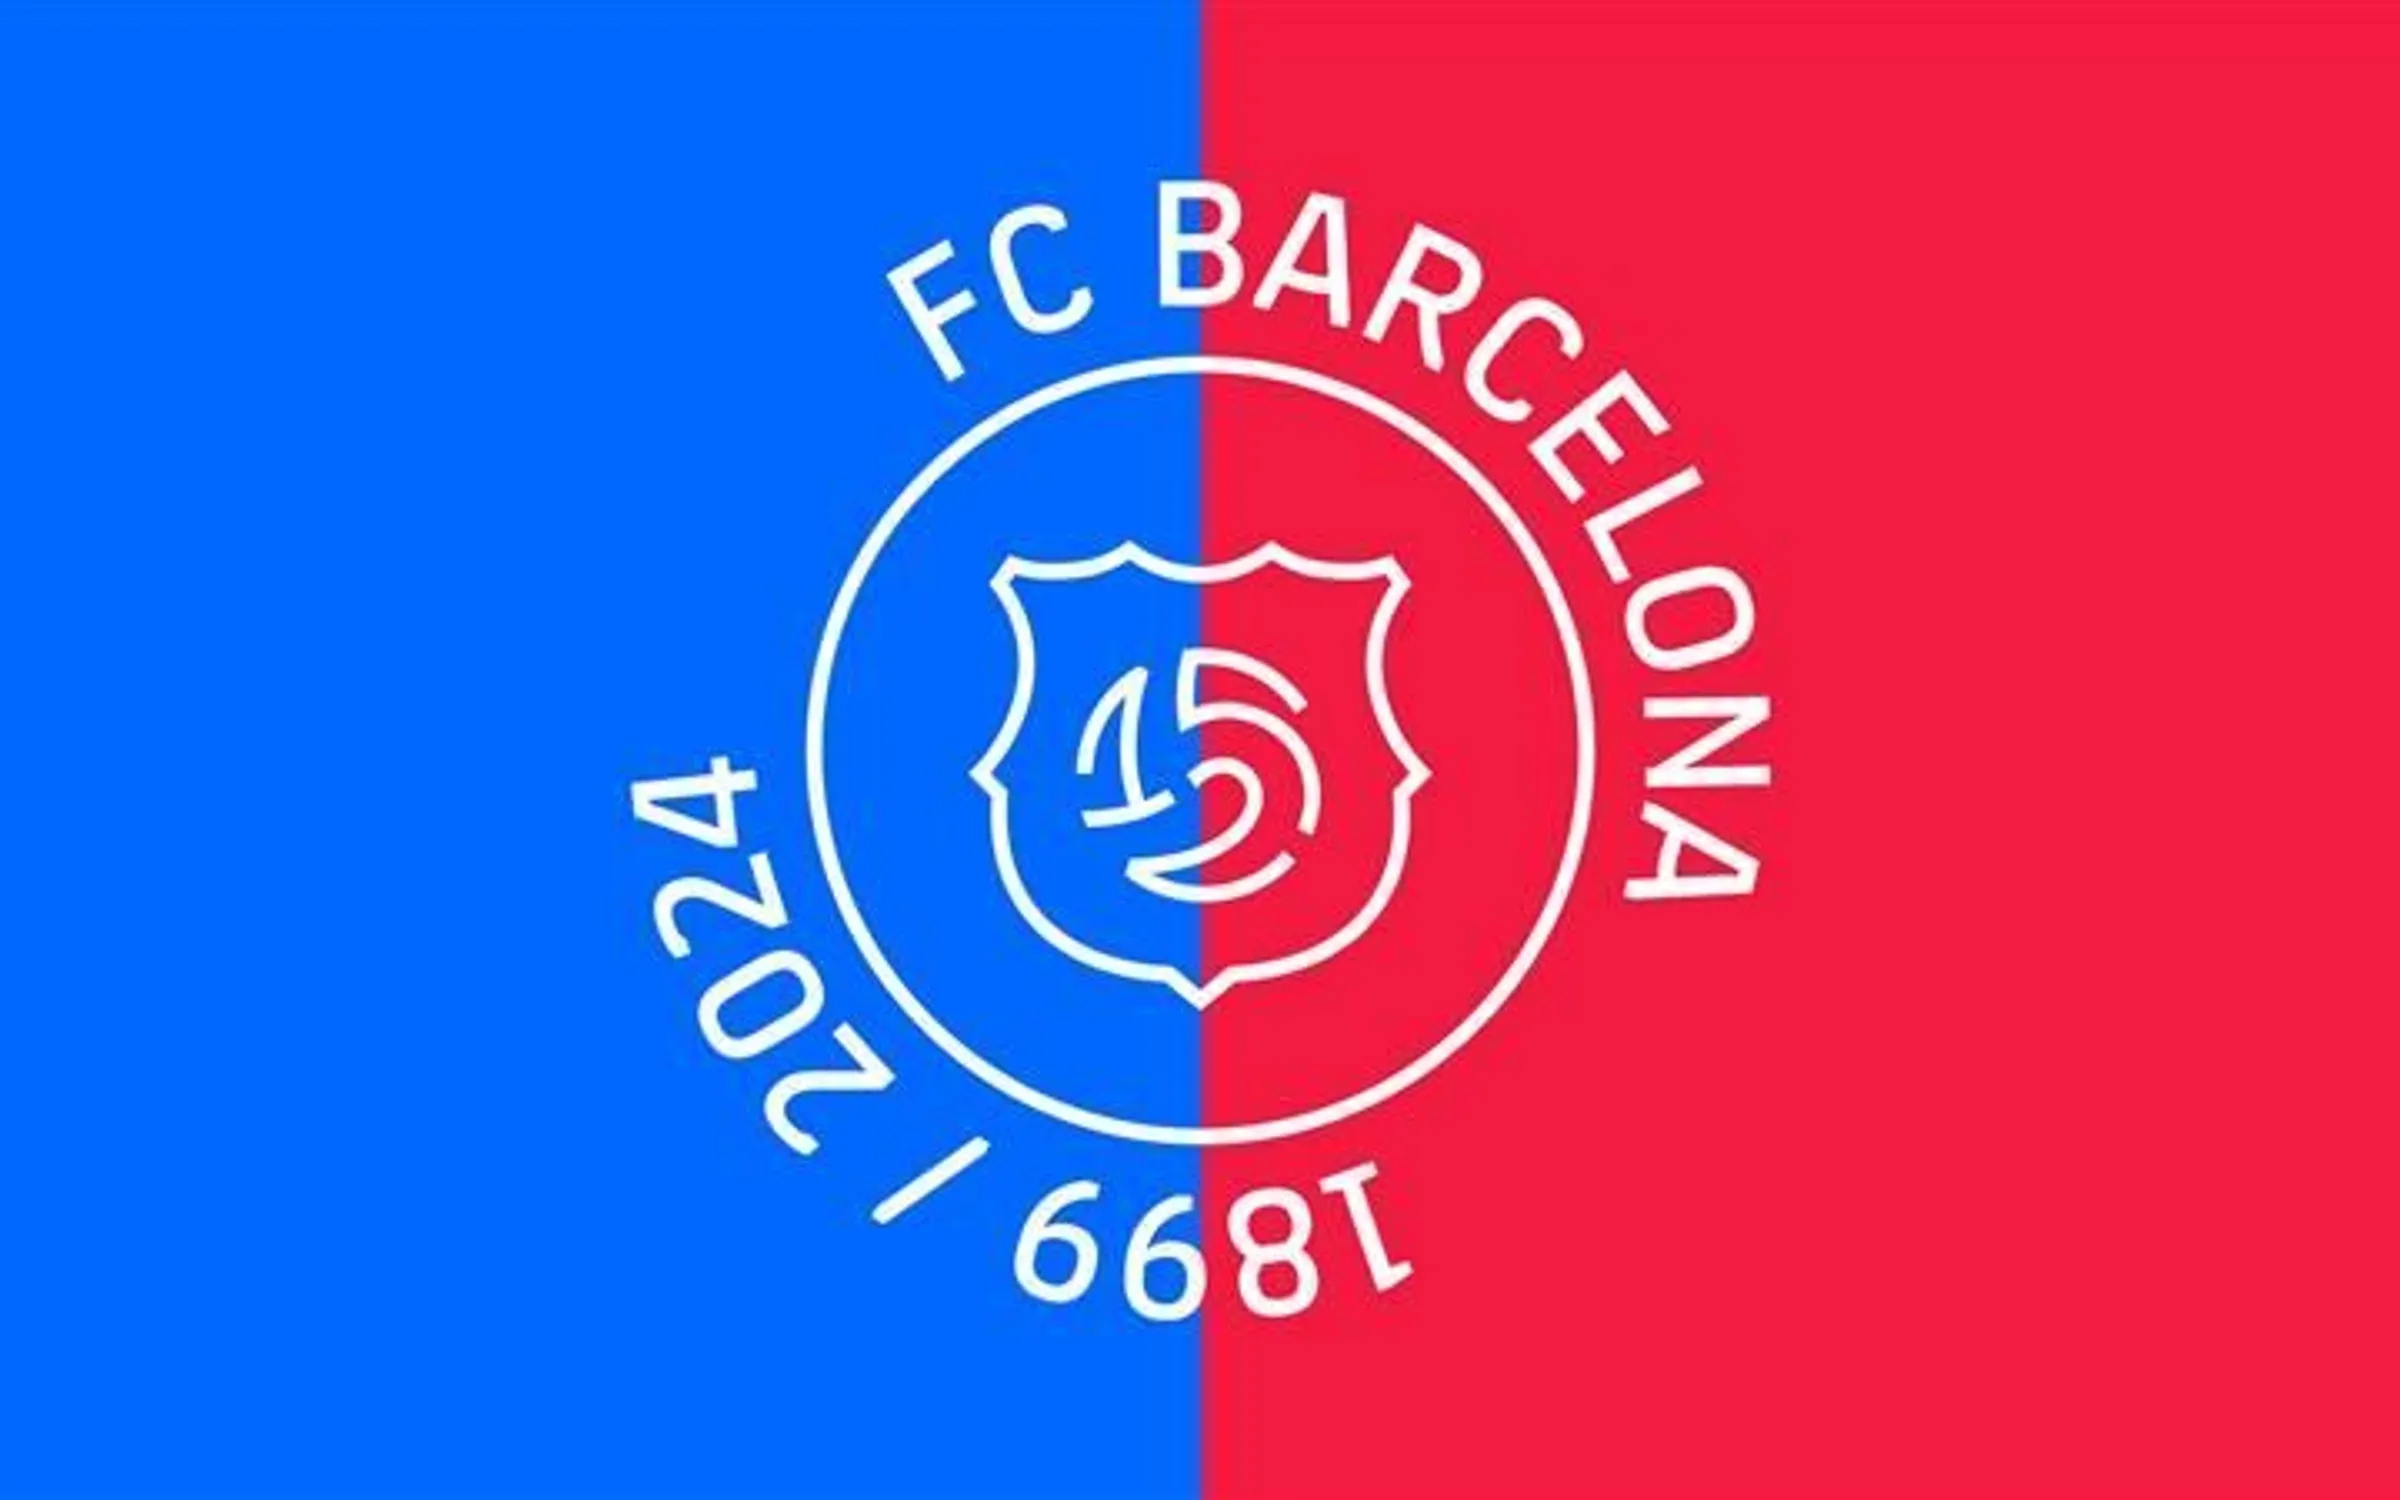 Oslavy 124 let od založení klubu přineslo upravenou hymnu a nové výroční logo